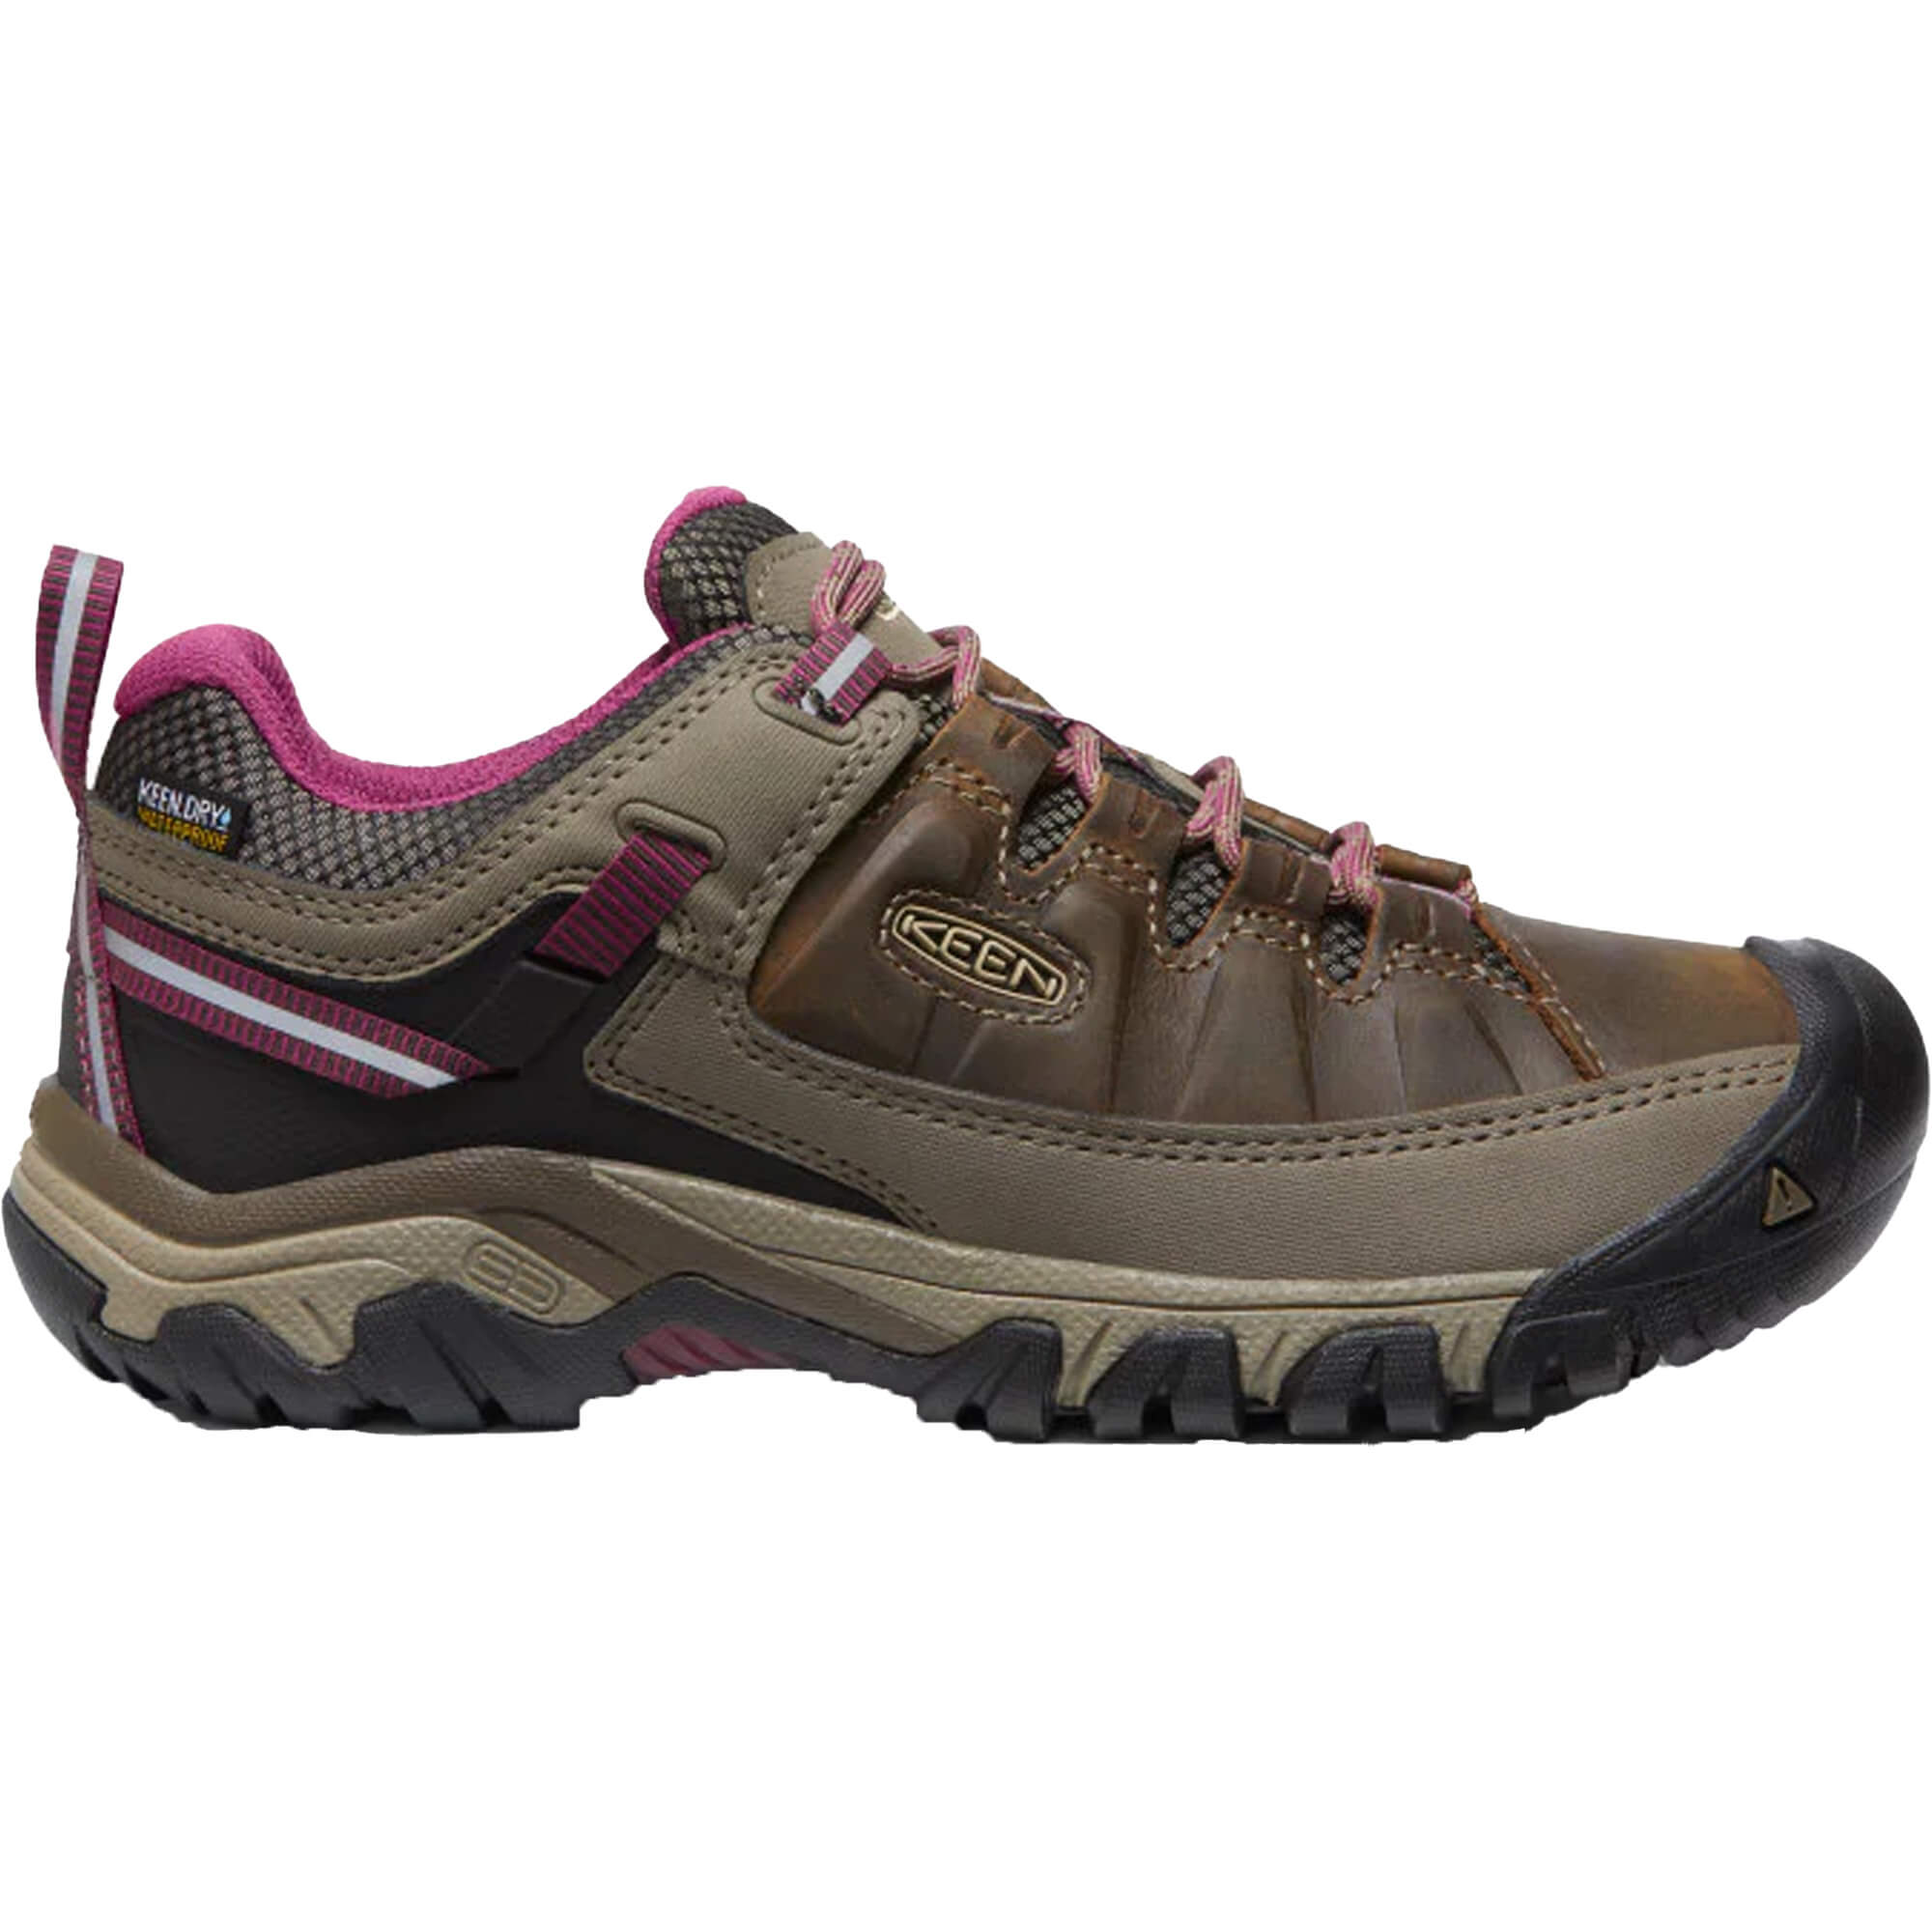 Keen Targhee III WP Women’s Hiking Shoes